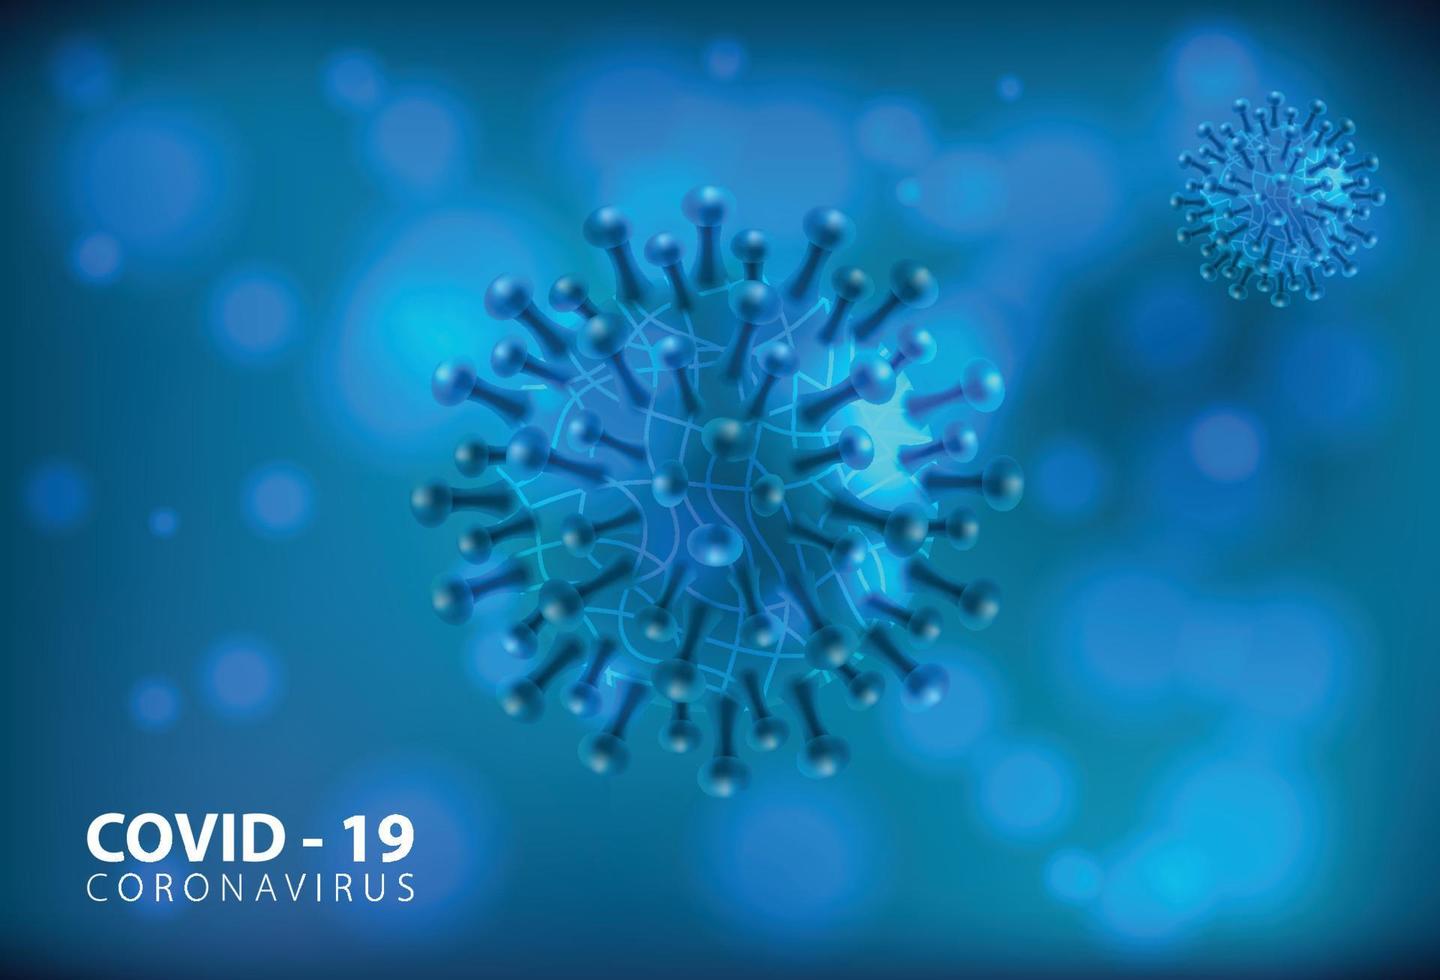 enfermedad por coronavirus covid-19 infección médica aislada. células patógenas del virus covid de la influenza respiratoria patógena china. nuevo nombre oficial para la enfermedad del coronavirus llamado covid-19, ilustración vectorial vector